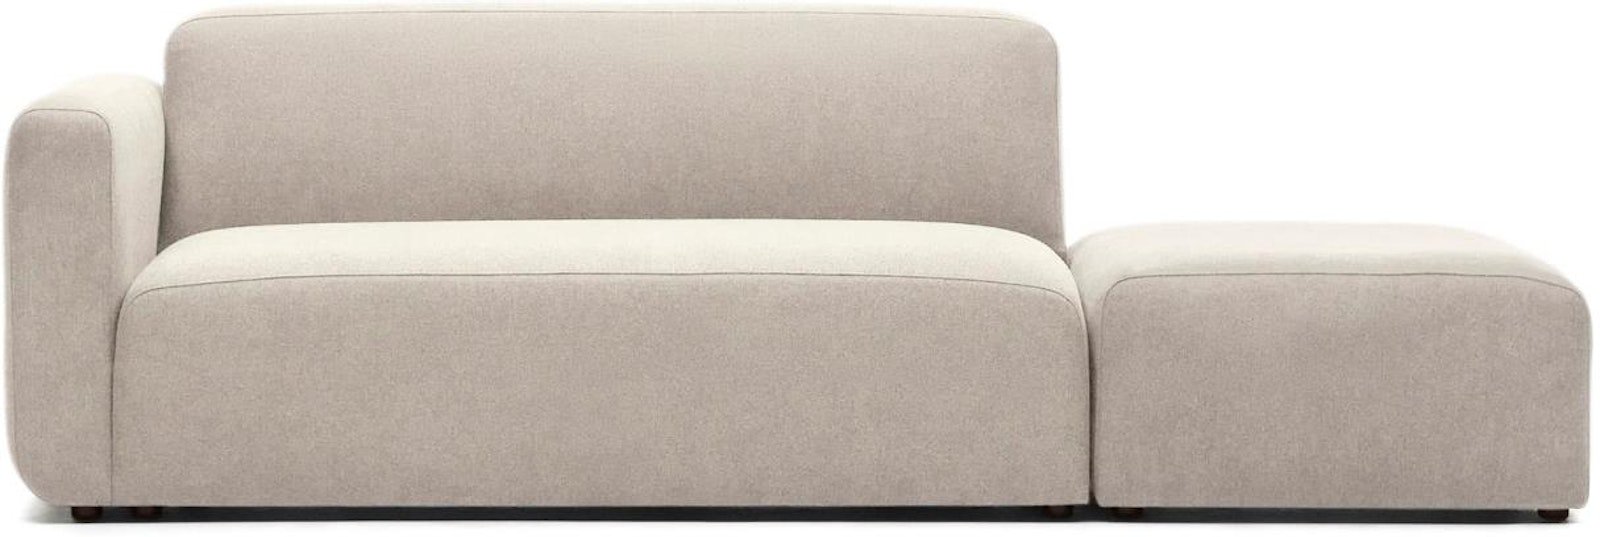 Neom, 2-personers sofa, moderne, nordisk, solidt træ by Laforma (H: 78 cm. x B: 244 cm. x L: 89 cm., Beige)